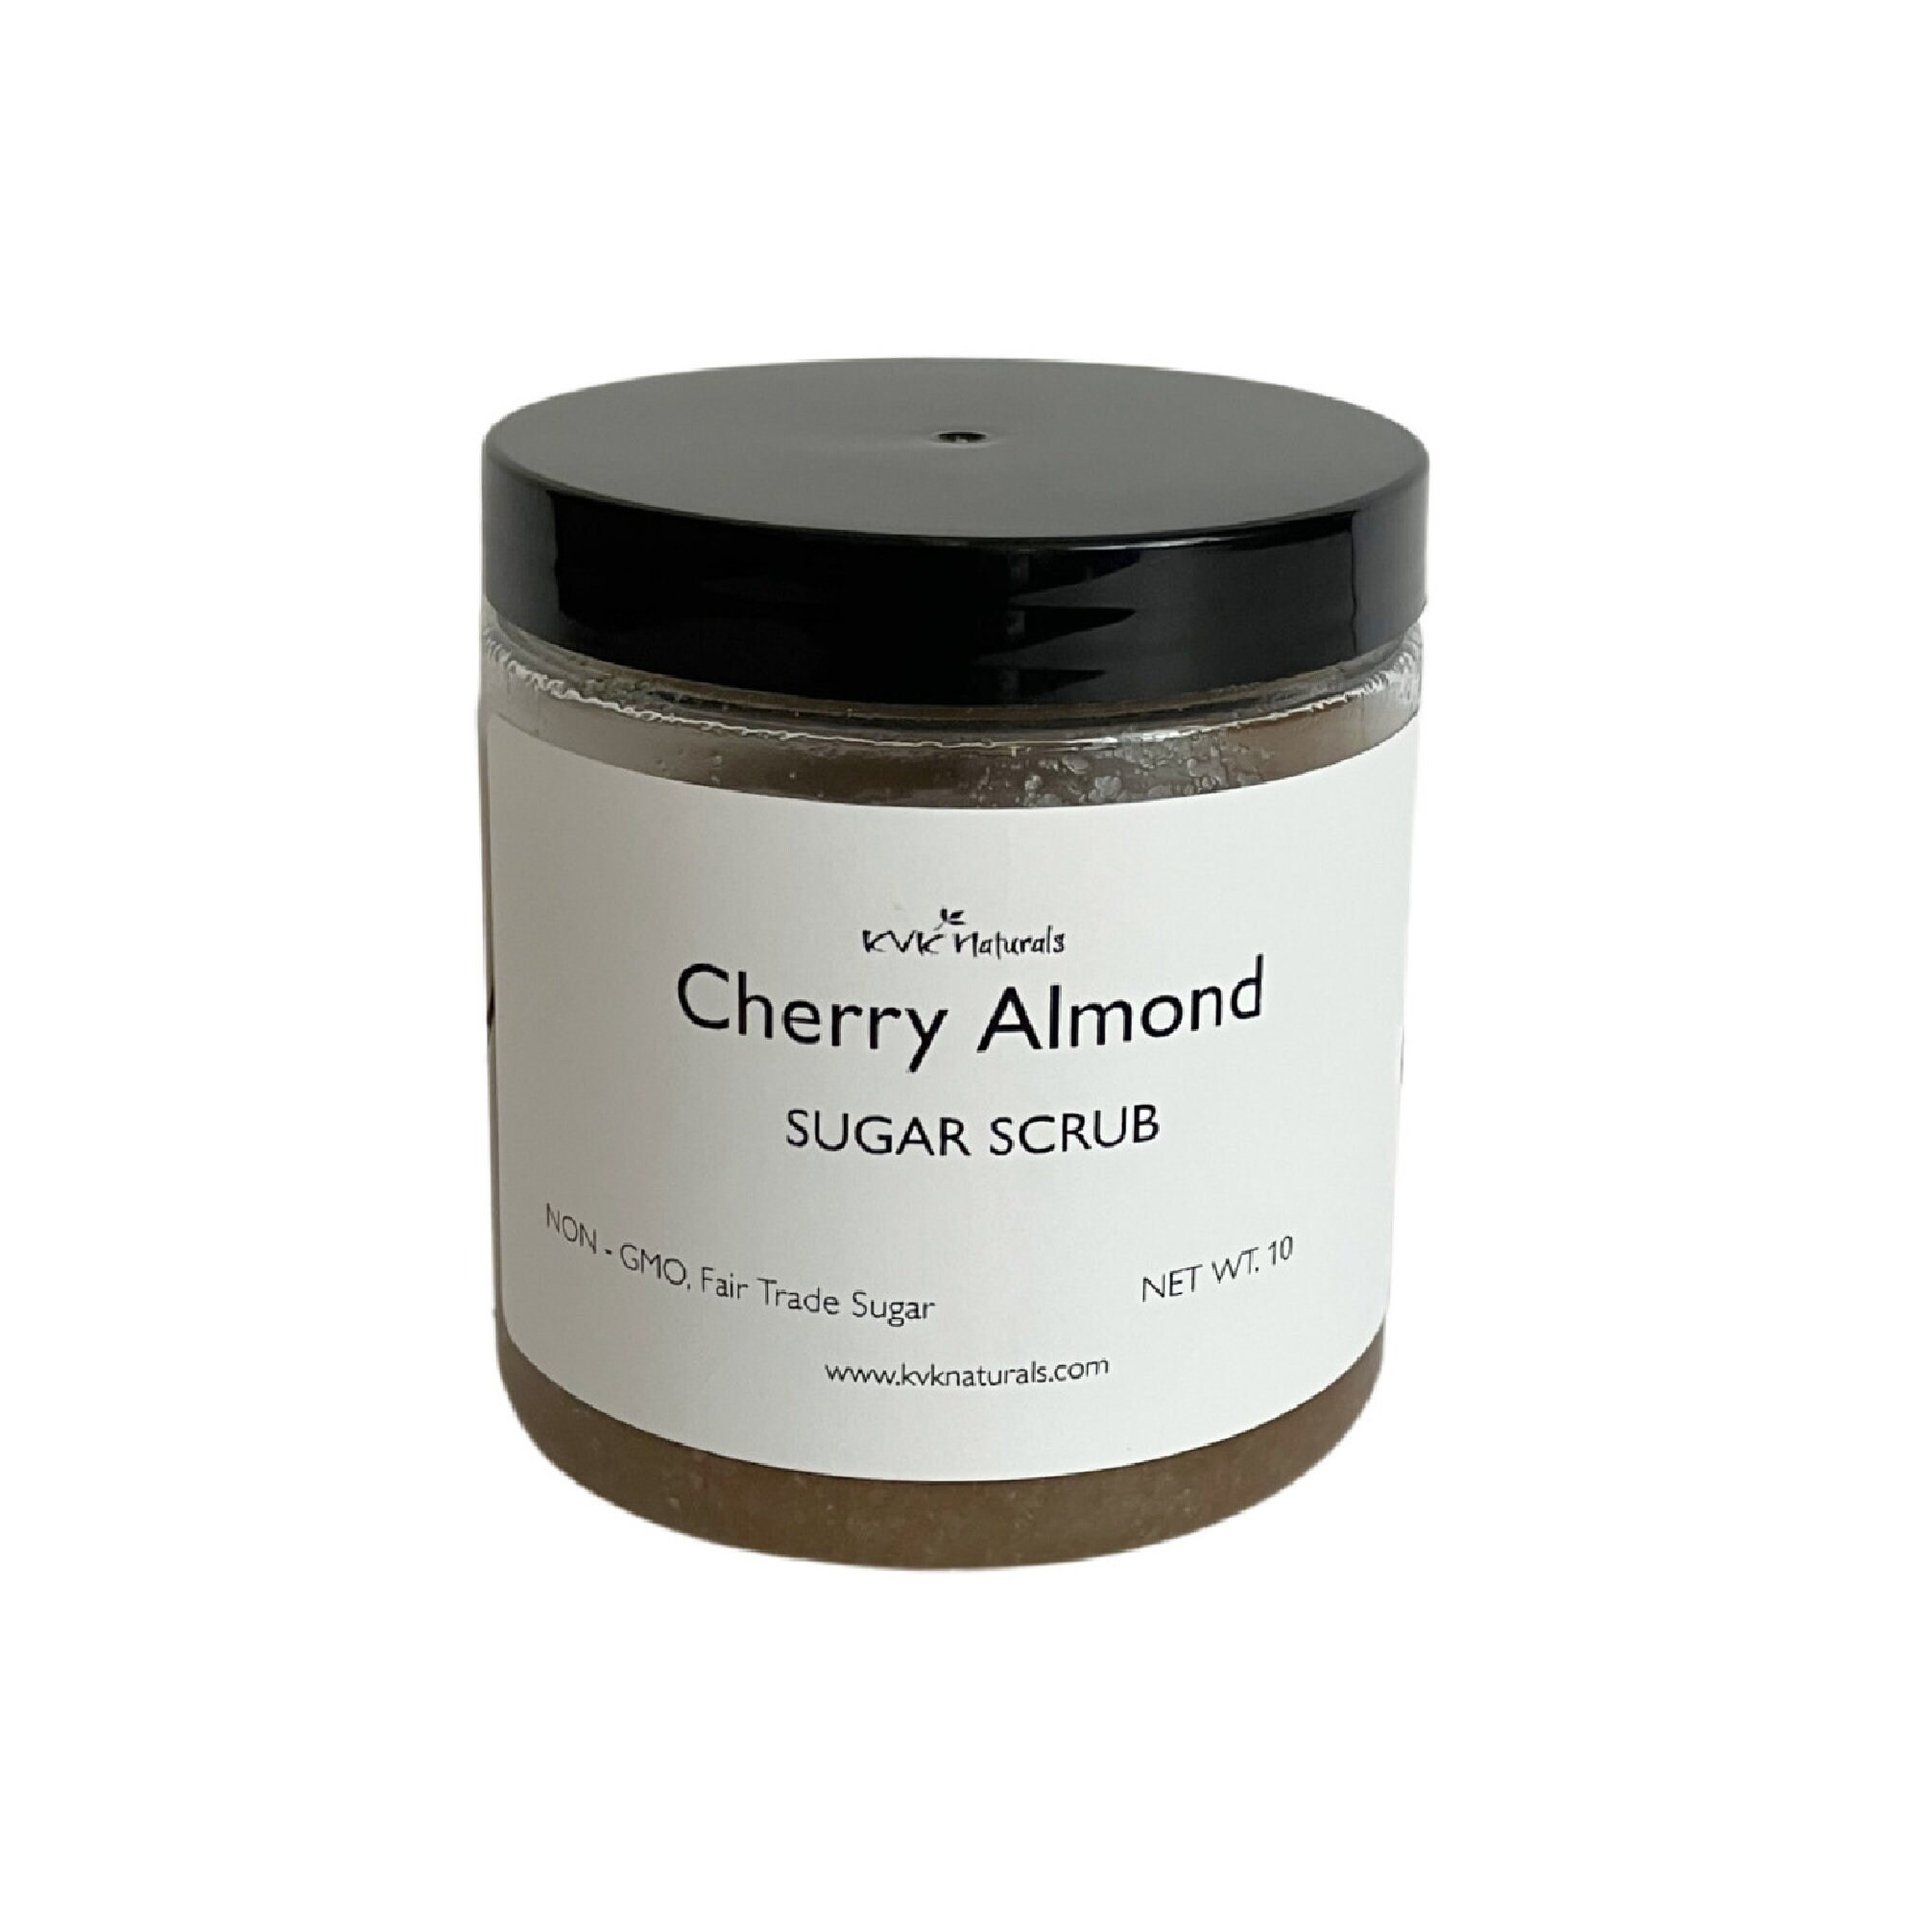 Sugar Scrub Cherry Almond - Sugar Scrubs, Body Scrub, Exfoliating Scrub, Organic Body Scrub